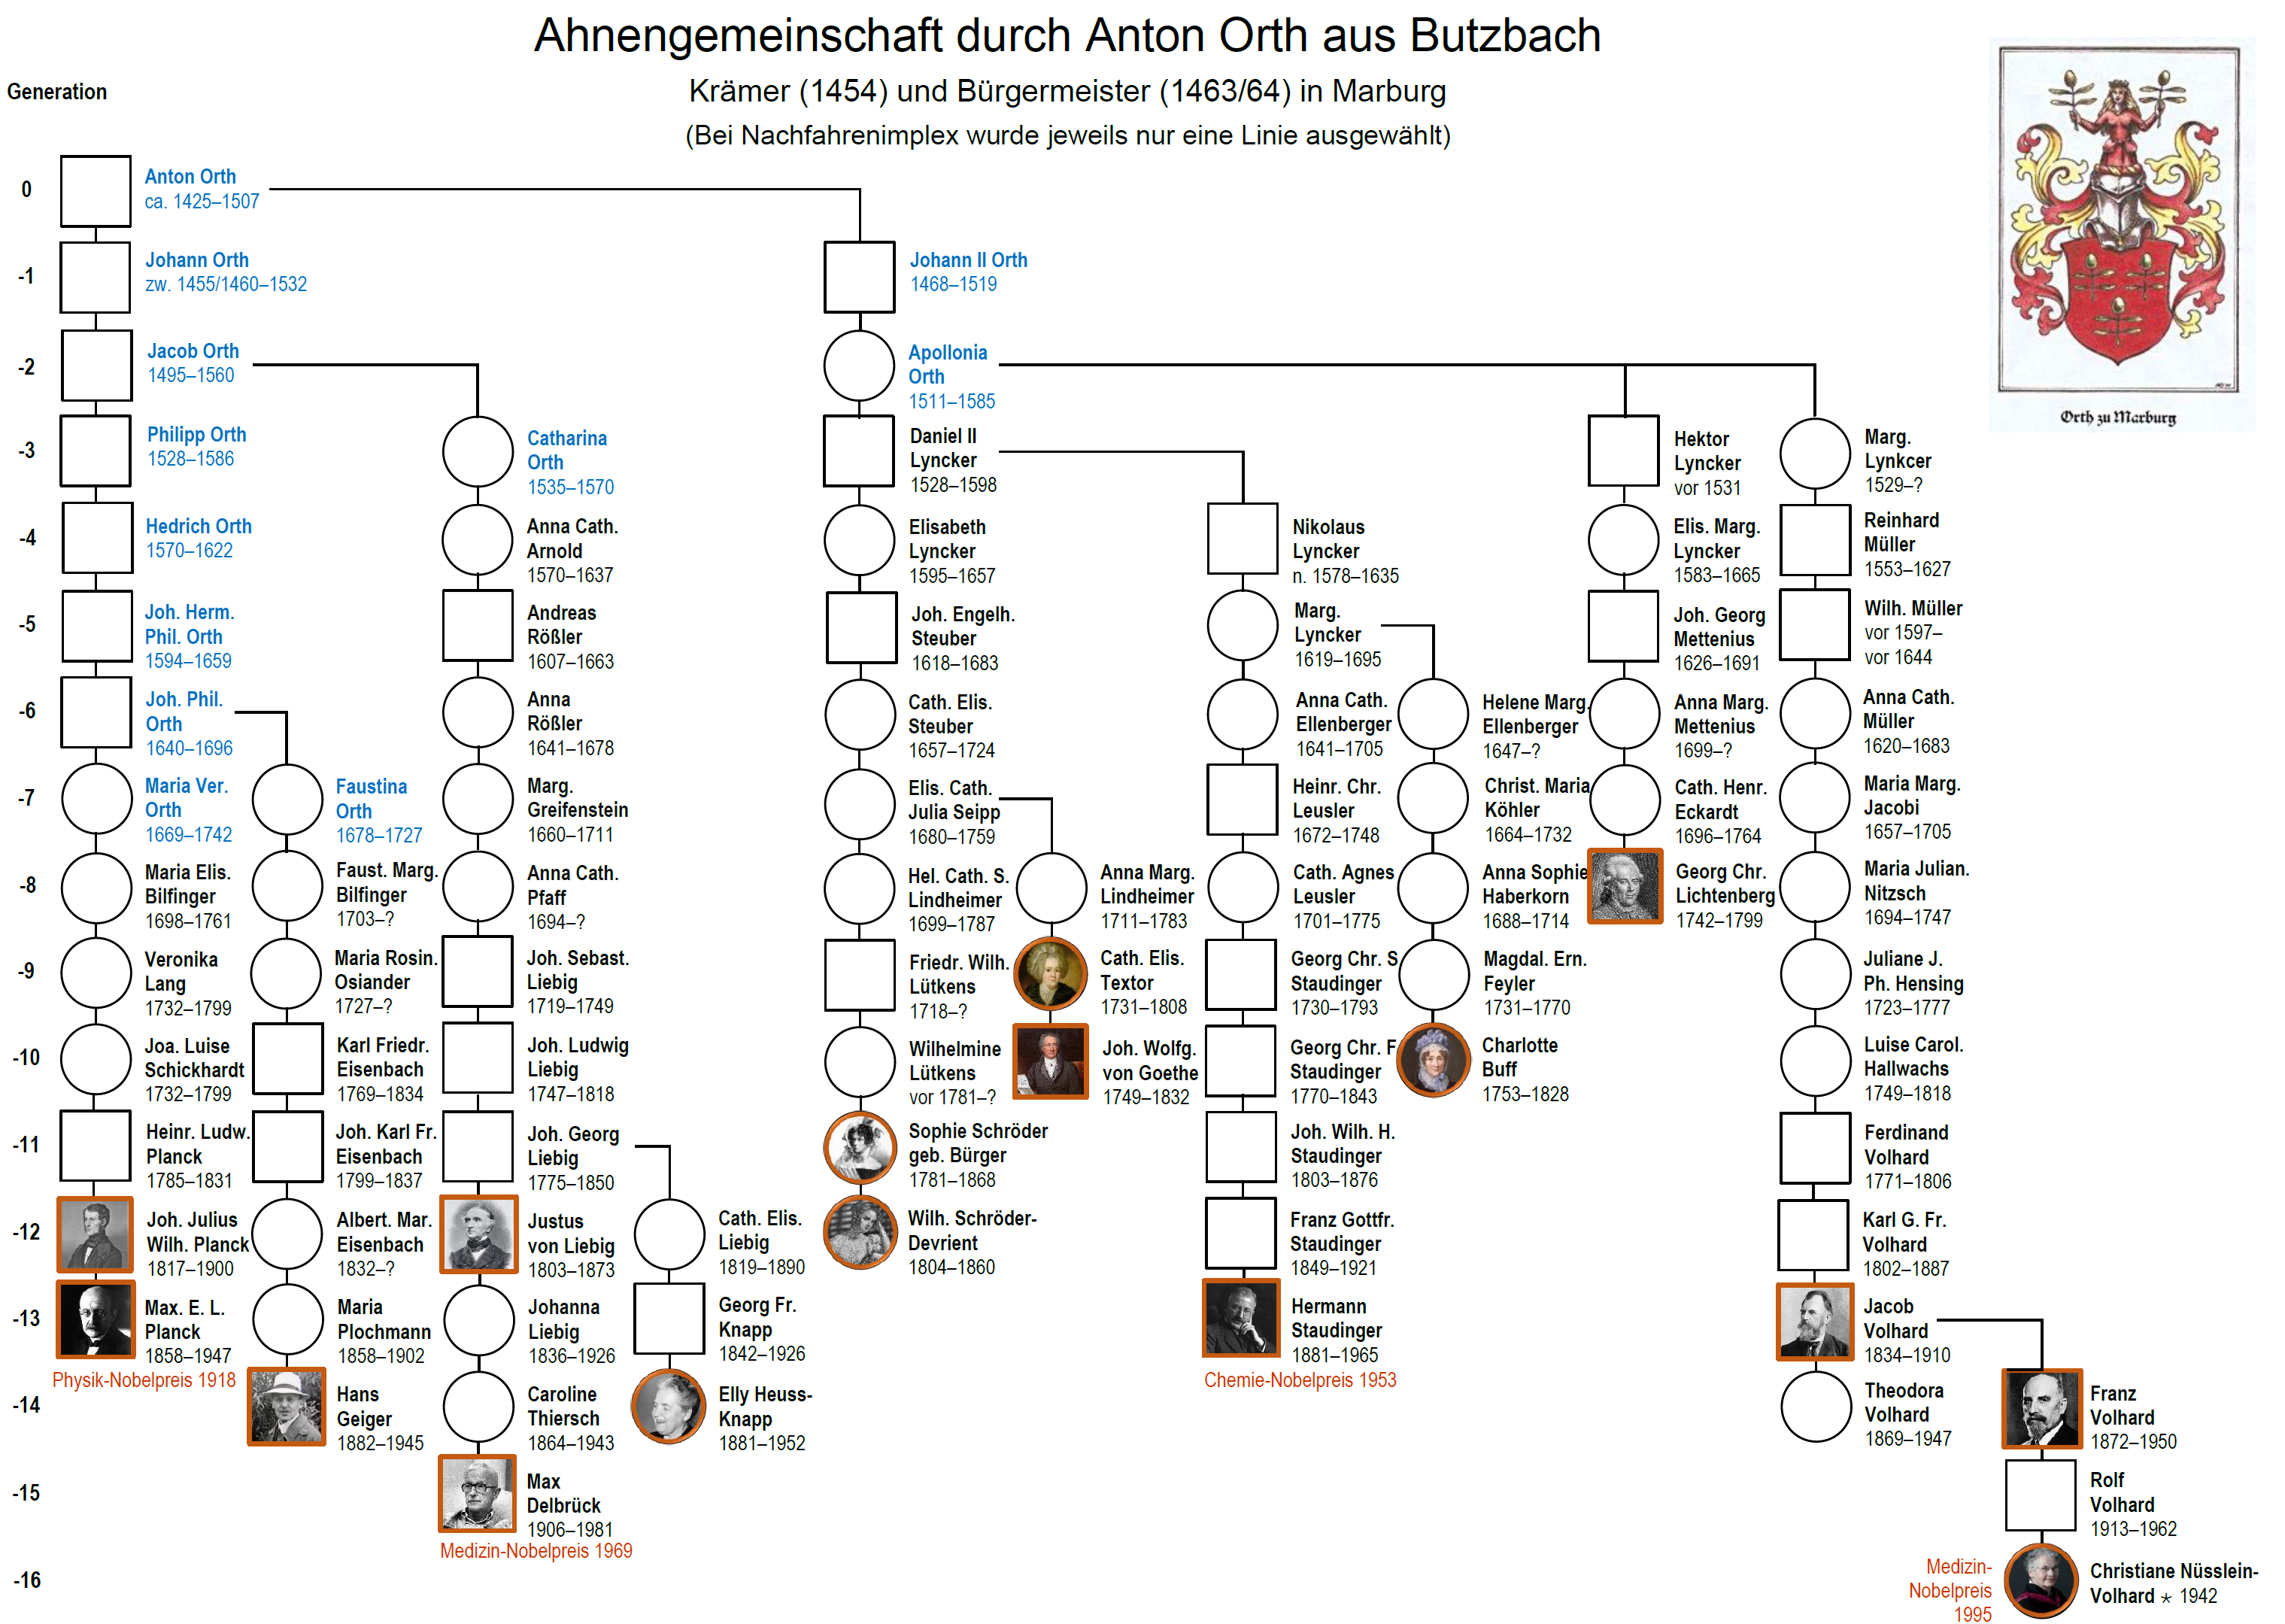 Richter & Hungerige (2020), Anton Orth - Lexikonberühmtheiten und Genealogen